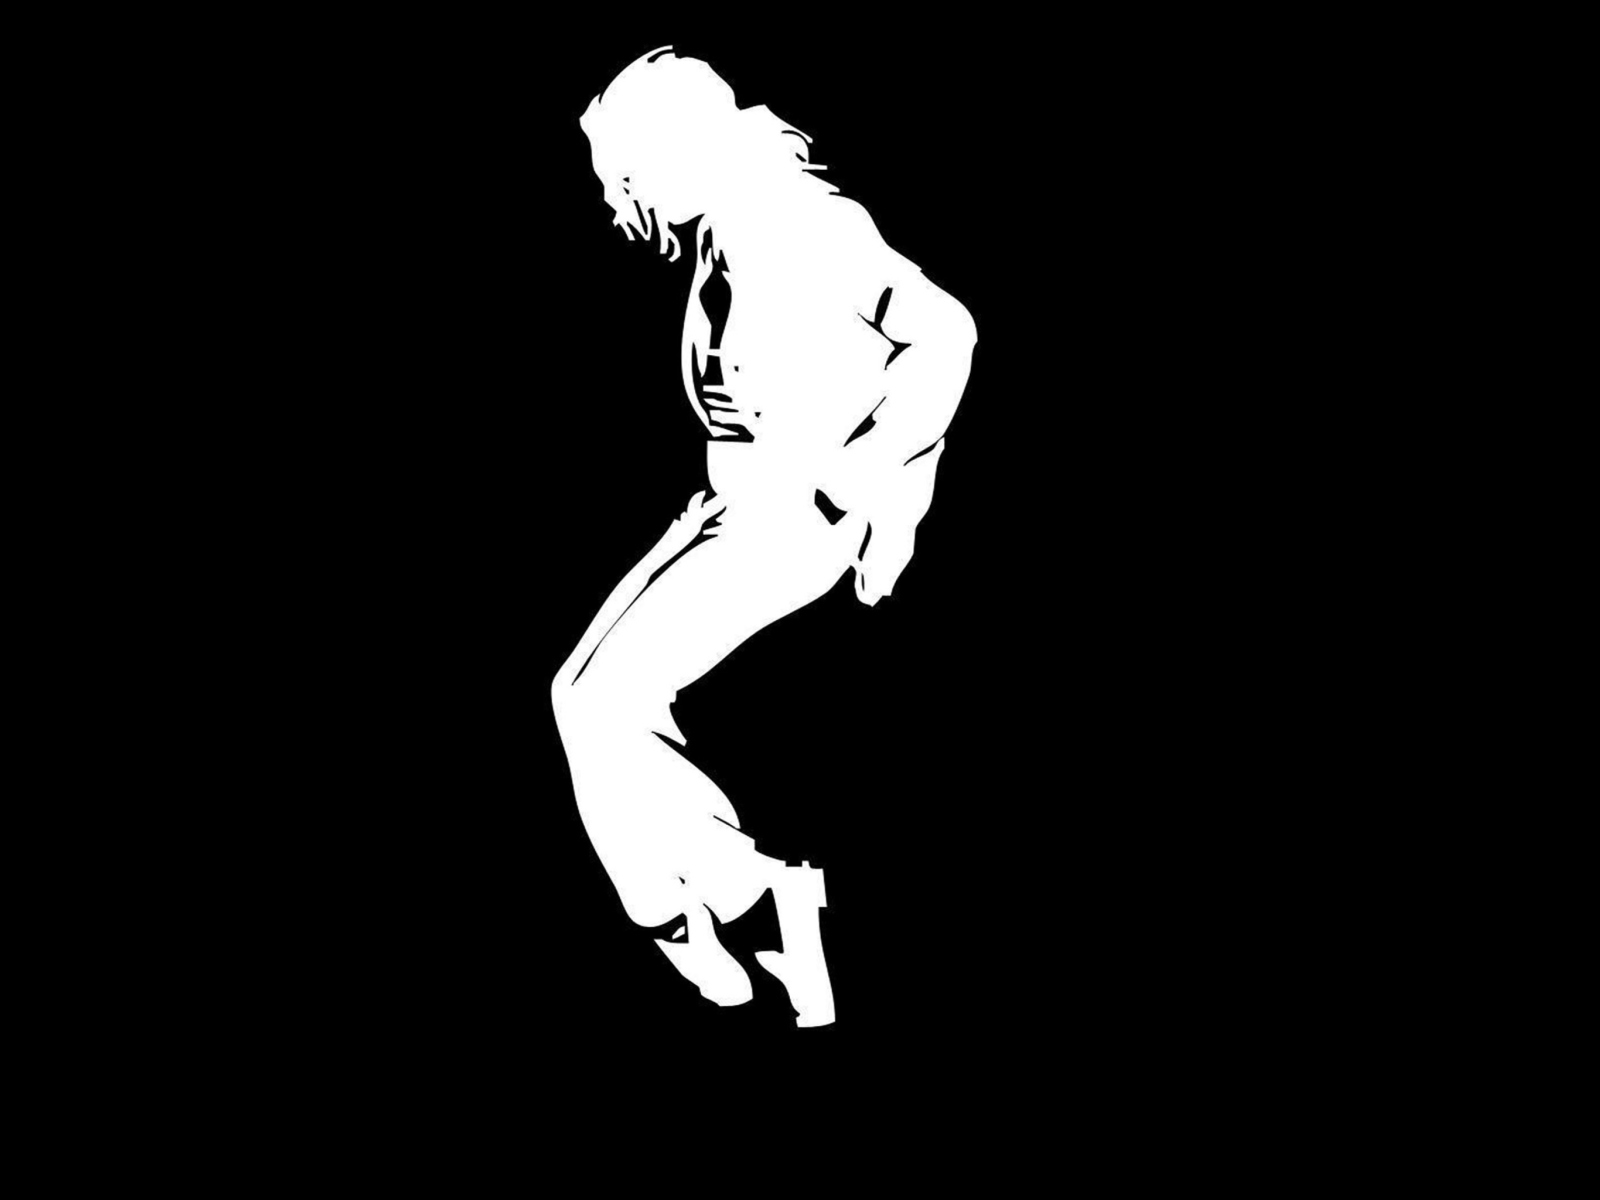 Michael Jackson wallpaper 1600x1200